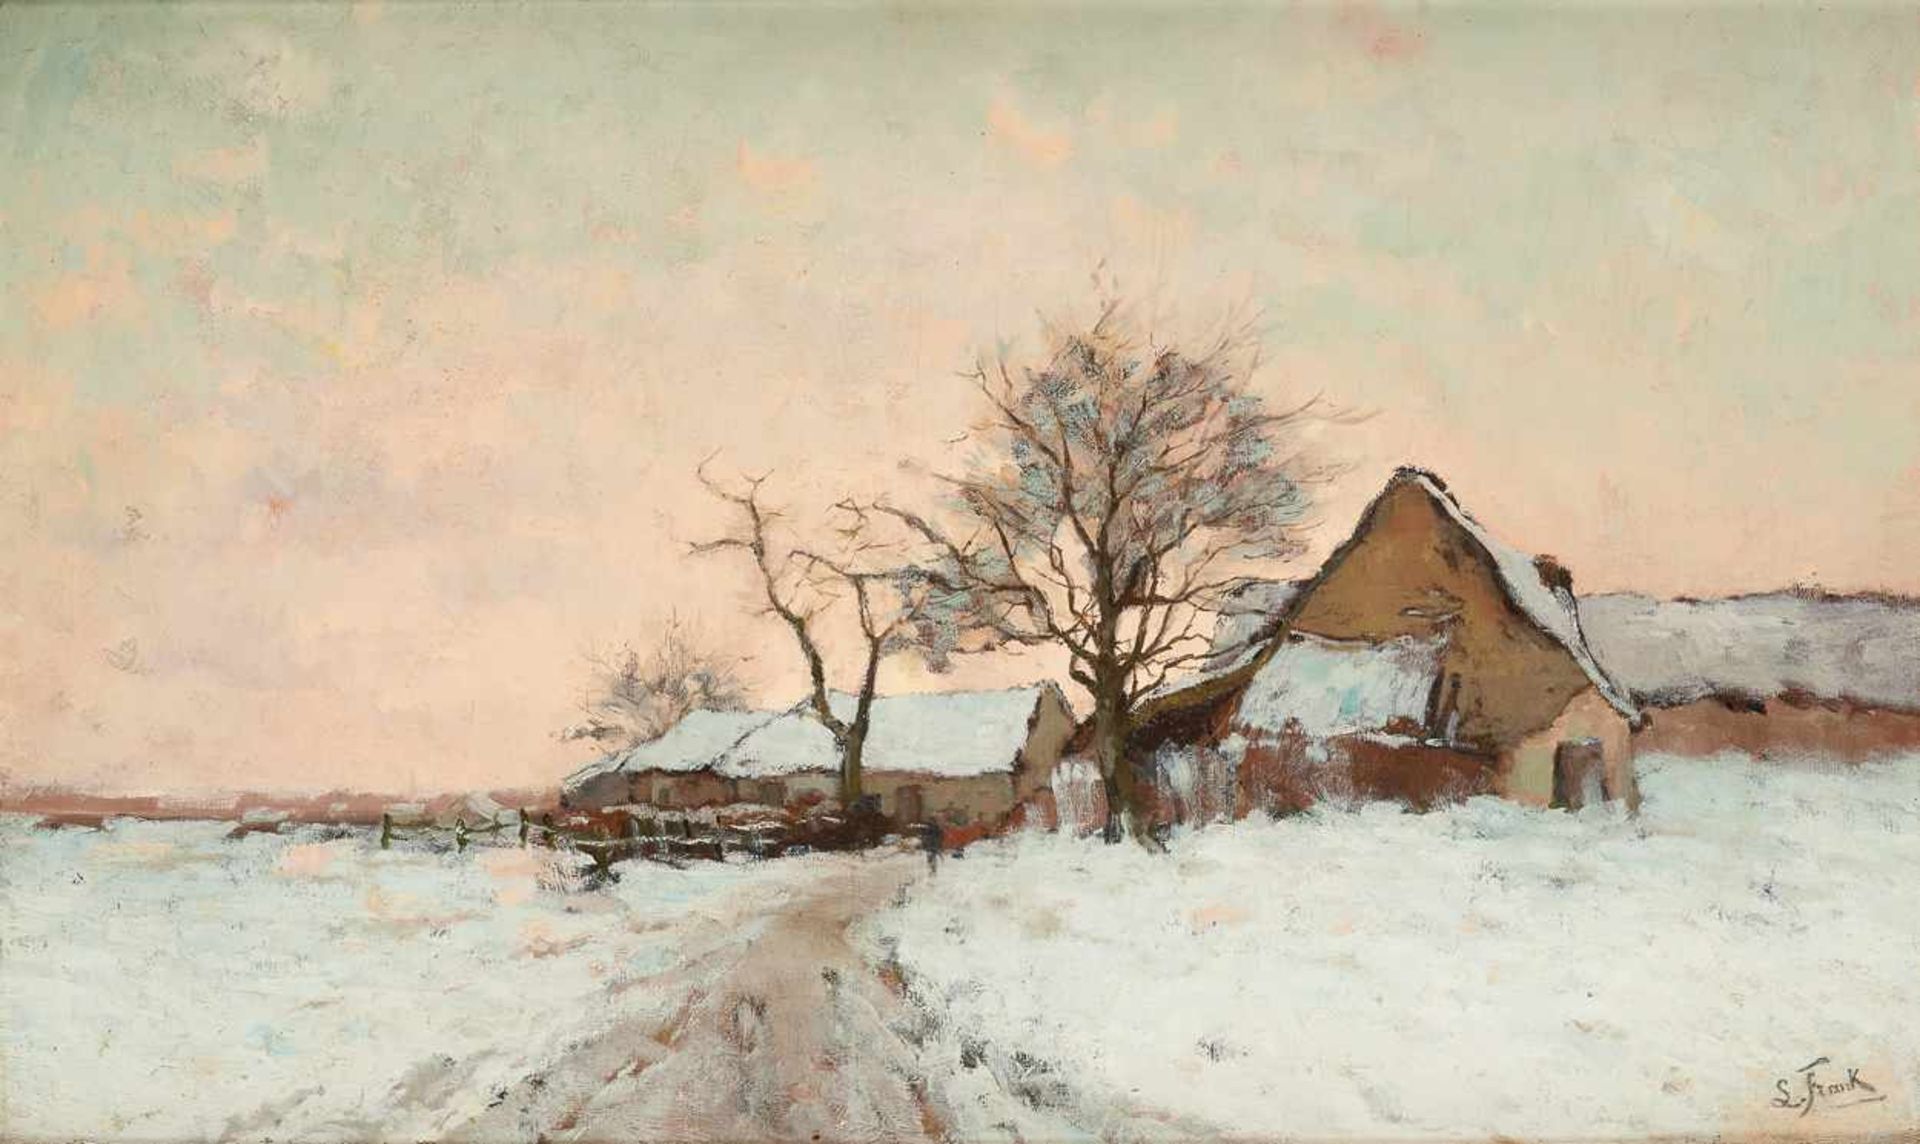 Lucien FRANK École belge (1857-1920)Huile sur toile (rentoilée): Paysage enneigé.Signée: L.